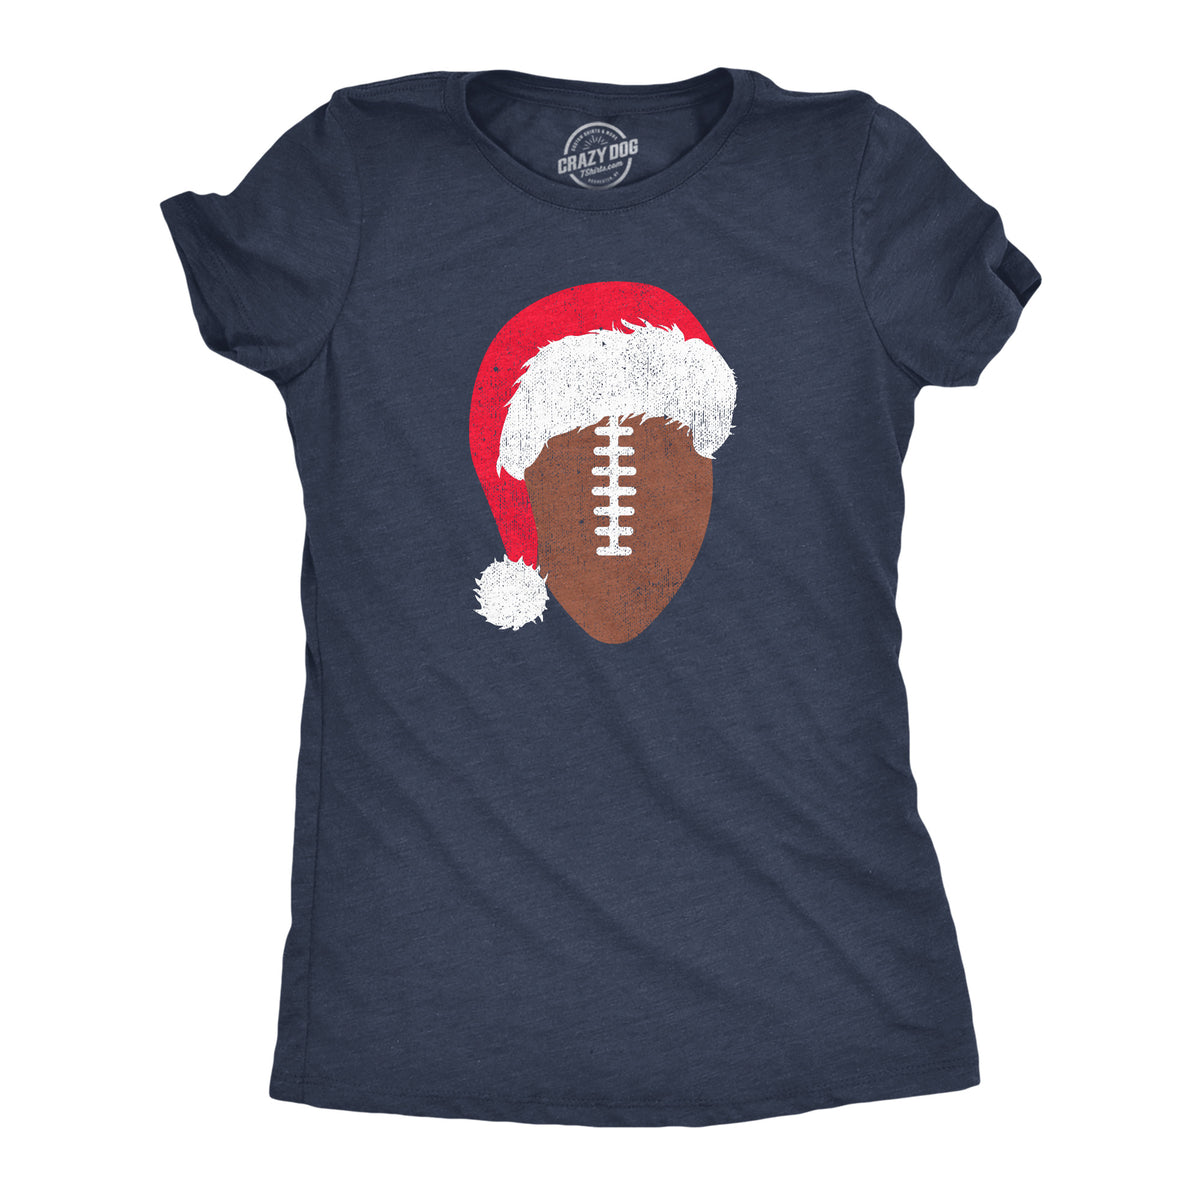 Funny Heather Navy - Santa Football Santa Football Womens T Shirt Nerdy Christmas Football Tee